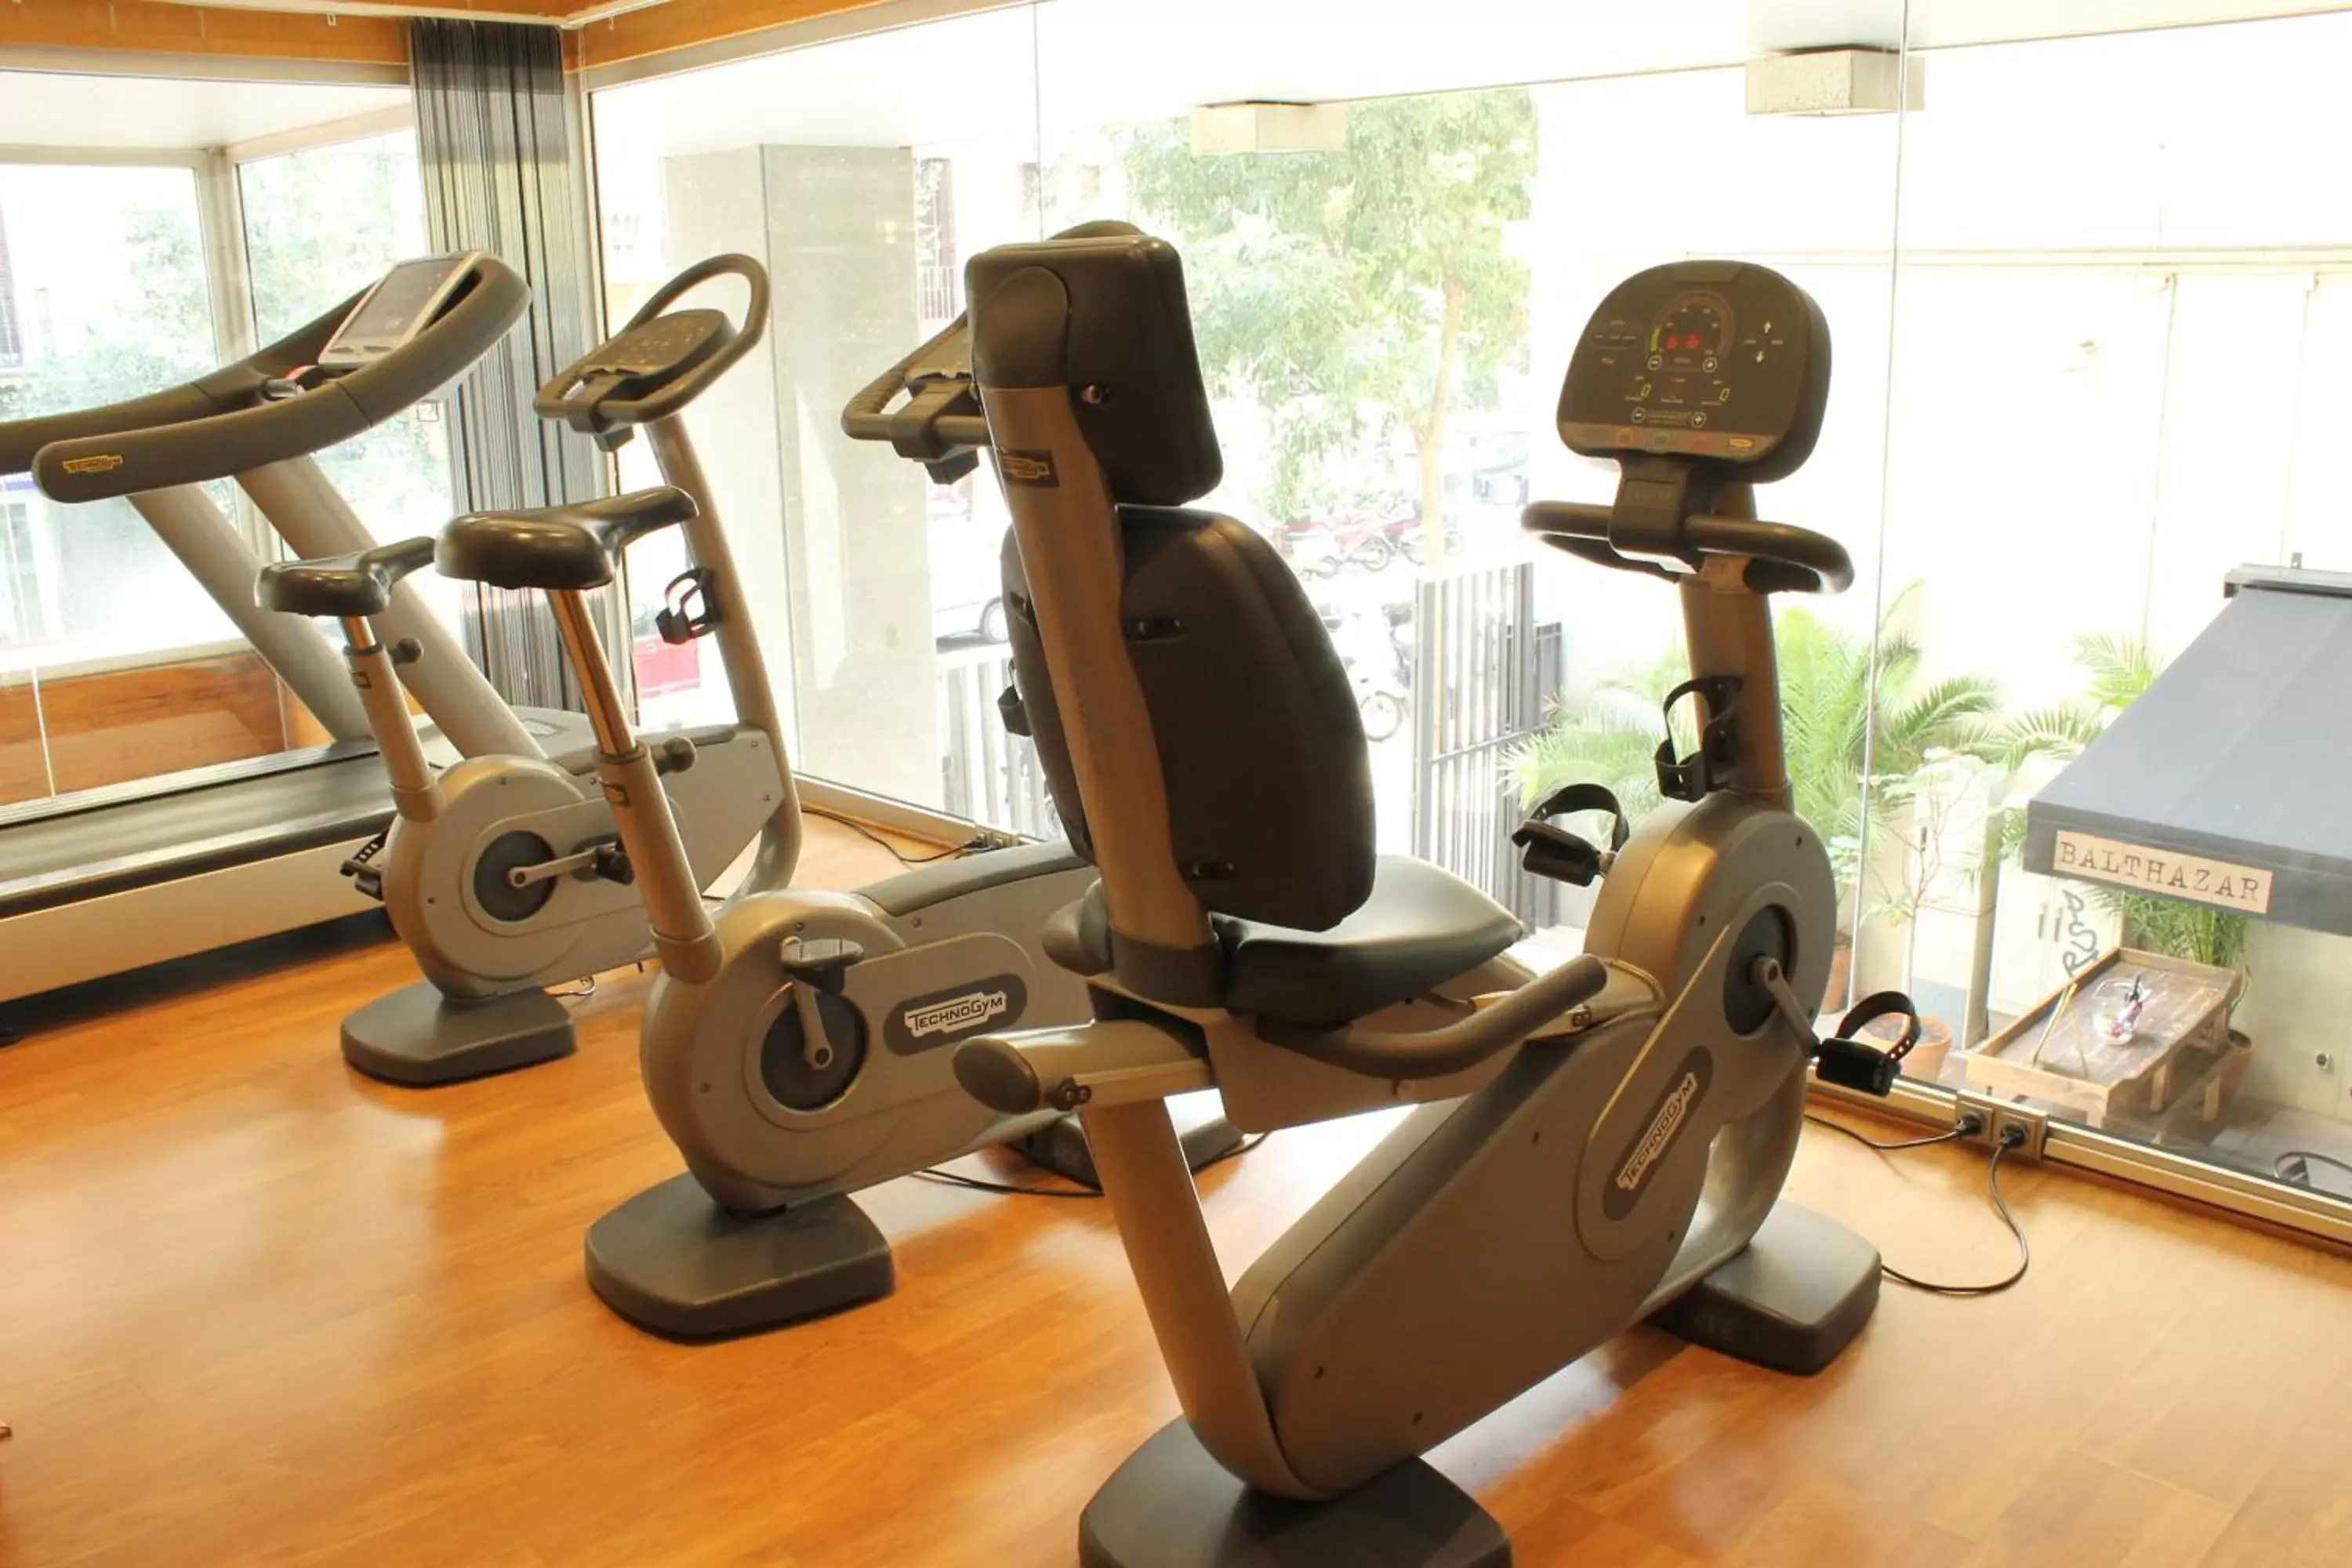 Fitness centre/facilities, Fitness Center/Facilities in Evenia Rossello